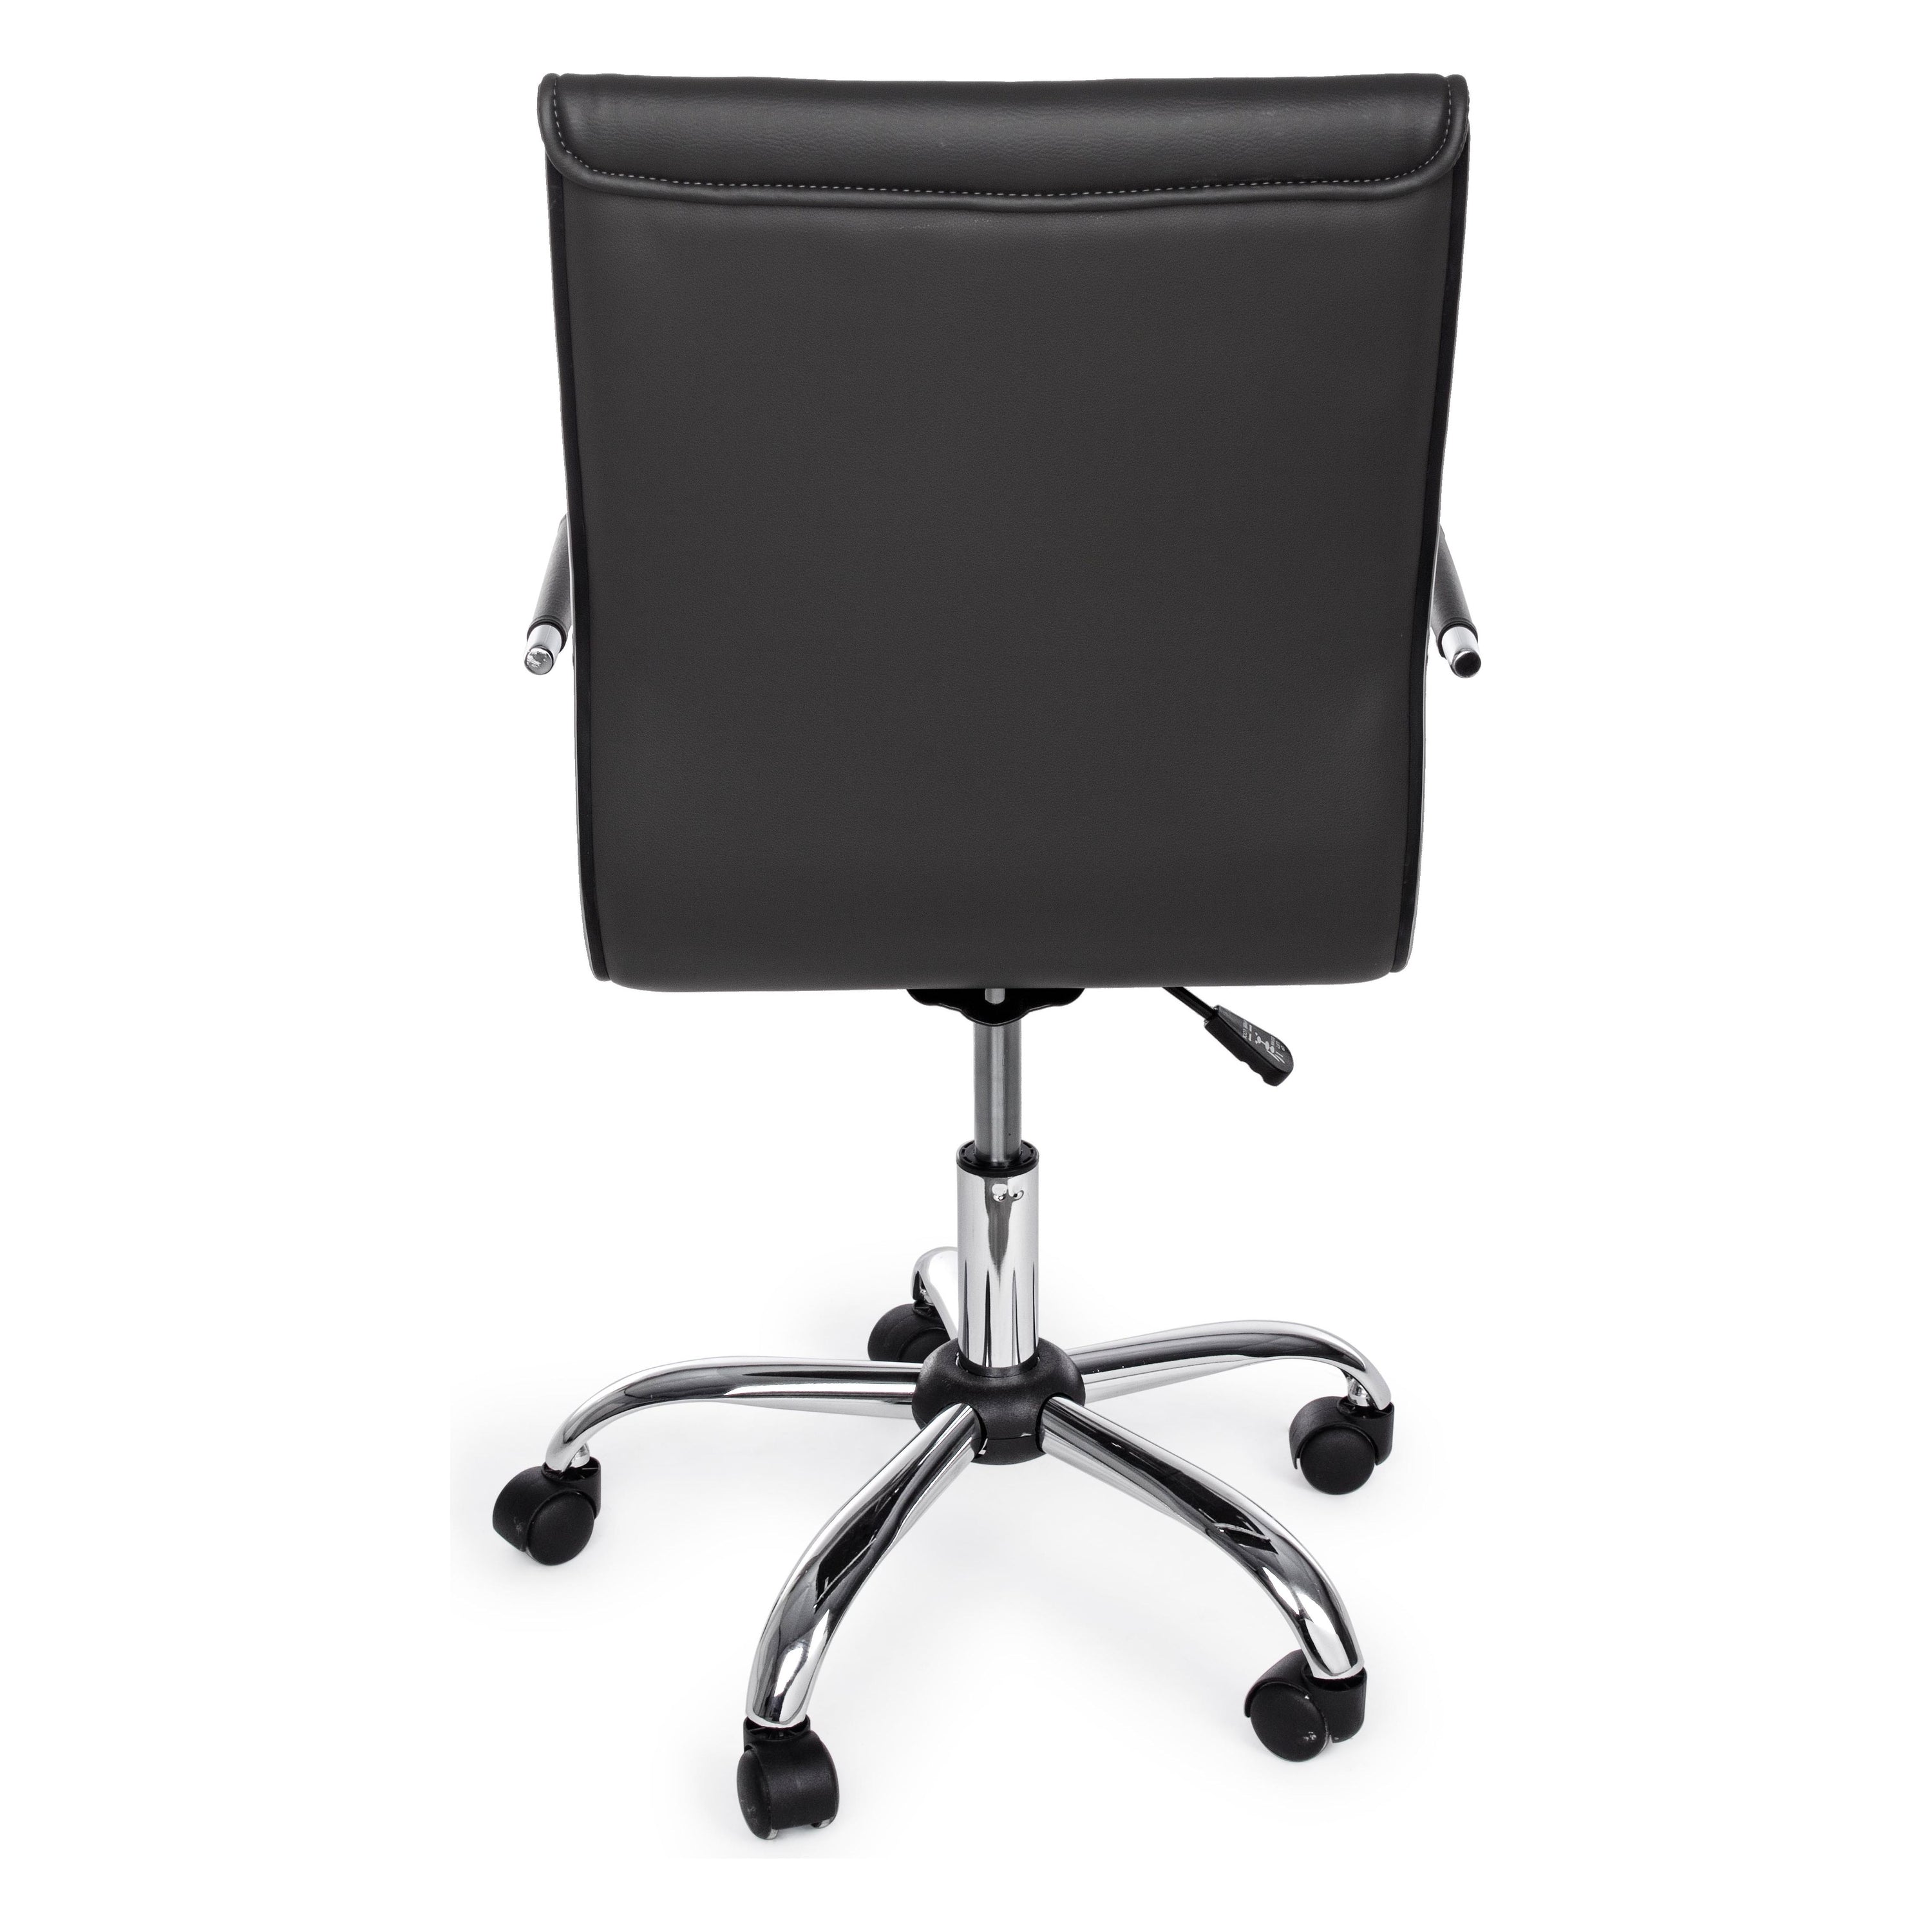 PERTH biuro kėdė su ratukais, dirbtinė oda, tamsiai pilka spalva